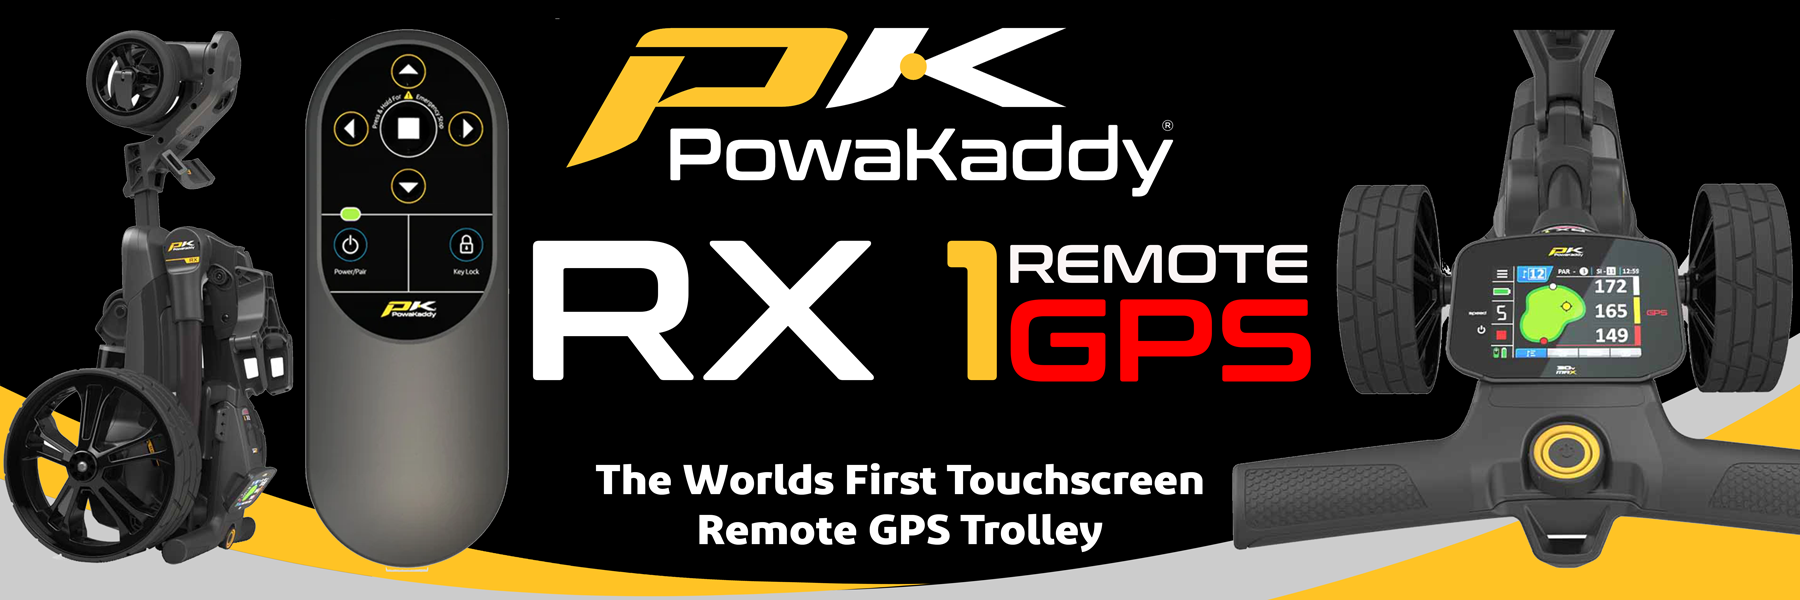 Powakaddy-RX1-GPS-Remote-Electric-Trolley-Banner-1800x600